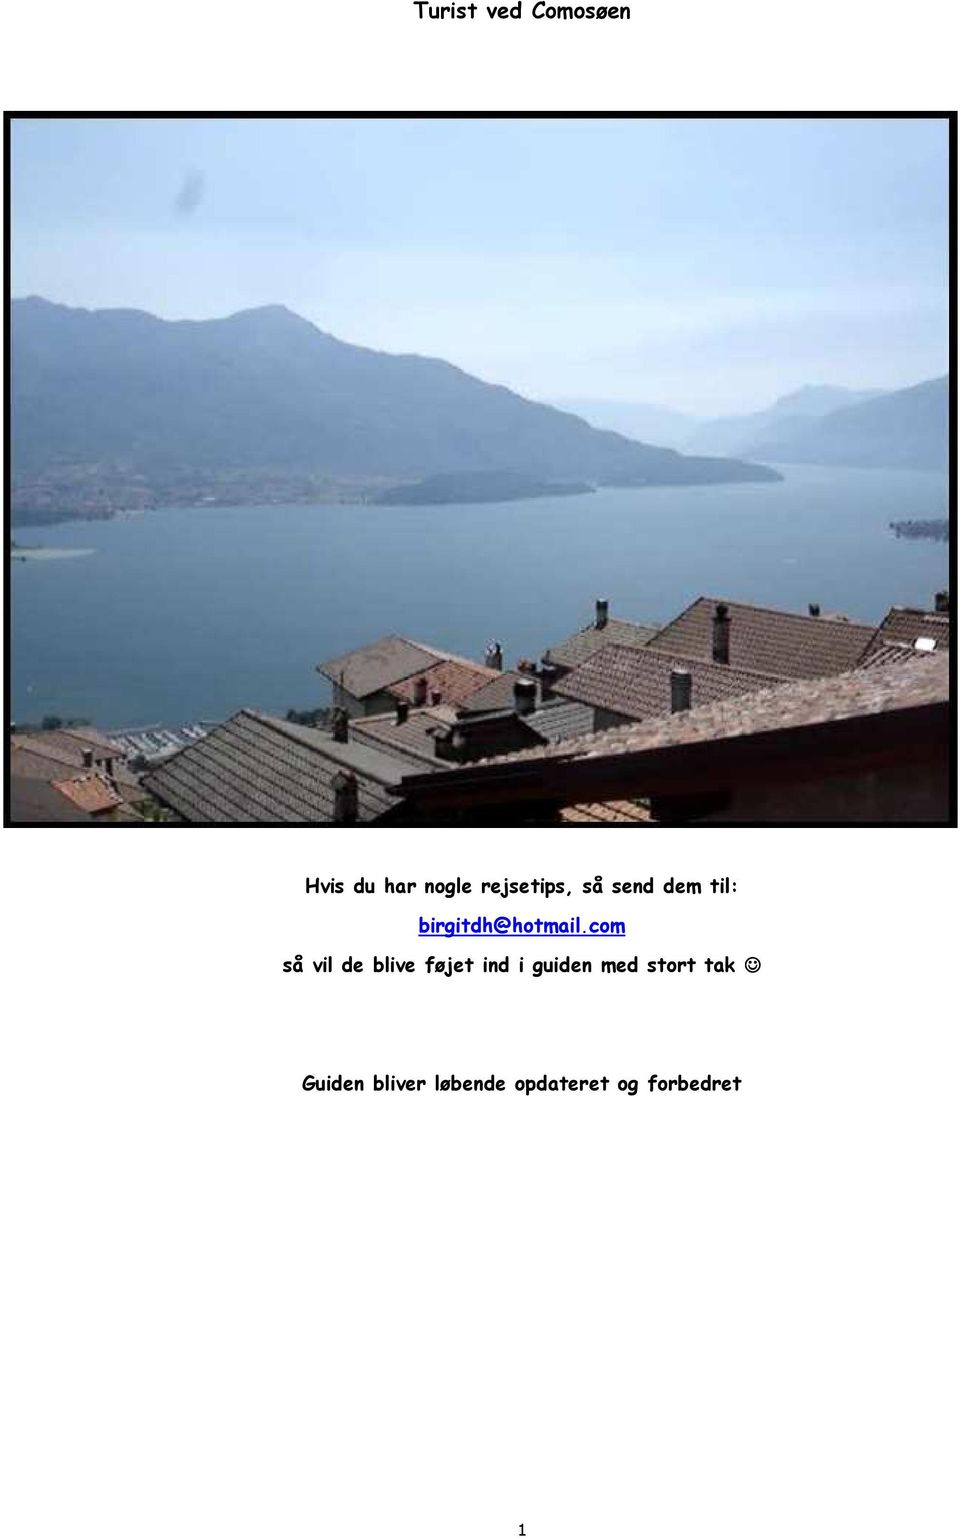 Turist ved Comosøen. Hvis du har nogle rejsetips, så send dem til: så vil blive føjet ind guiden med stort tak - PDF Free Download